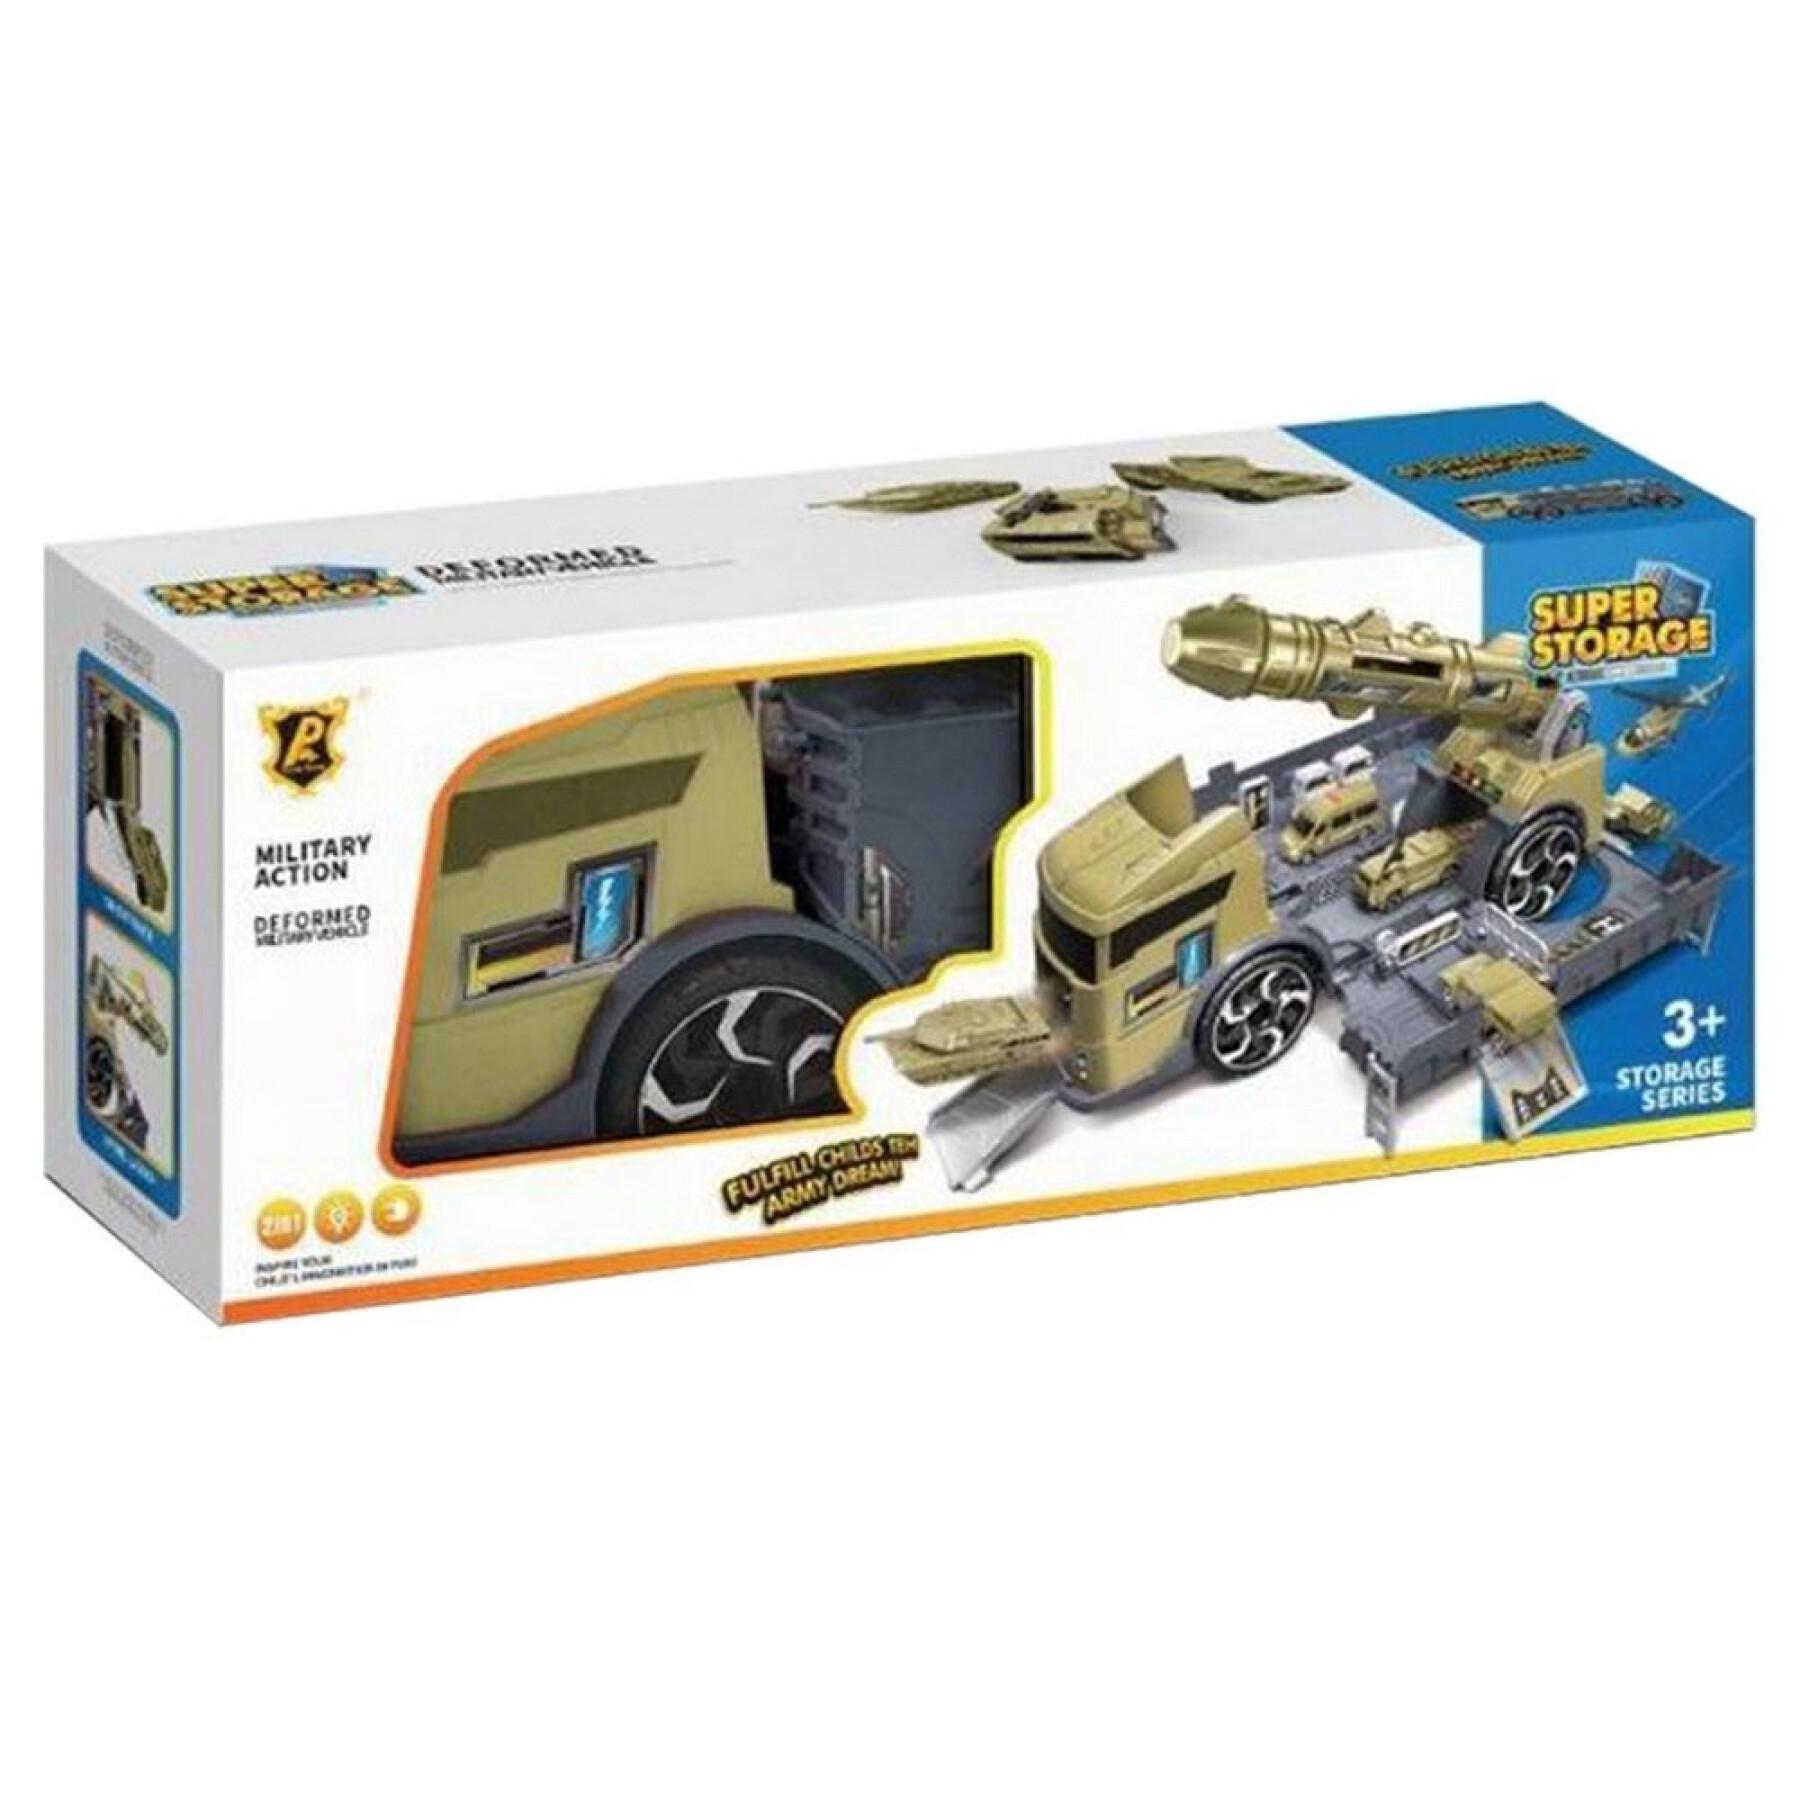 Military garage truck + accessory box Fantastiko